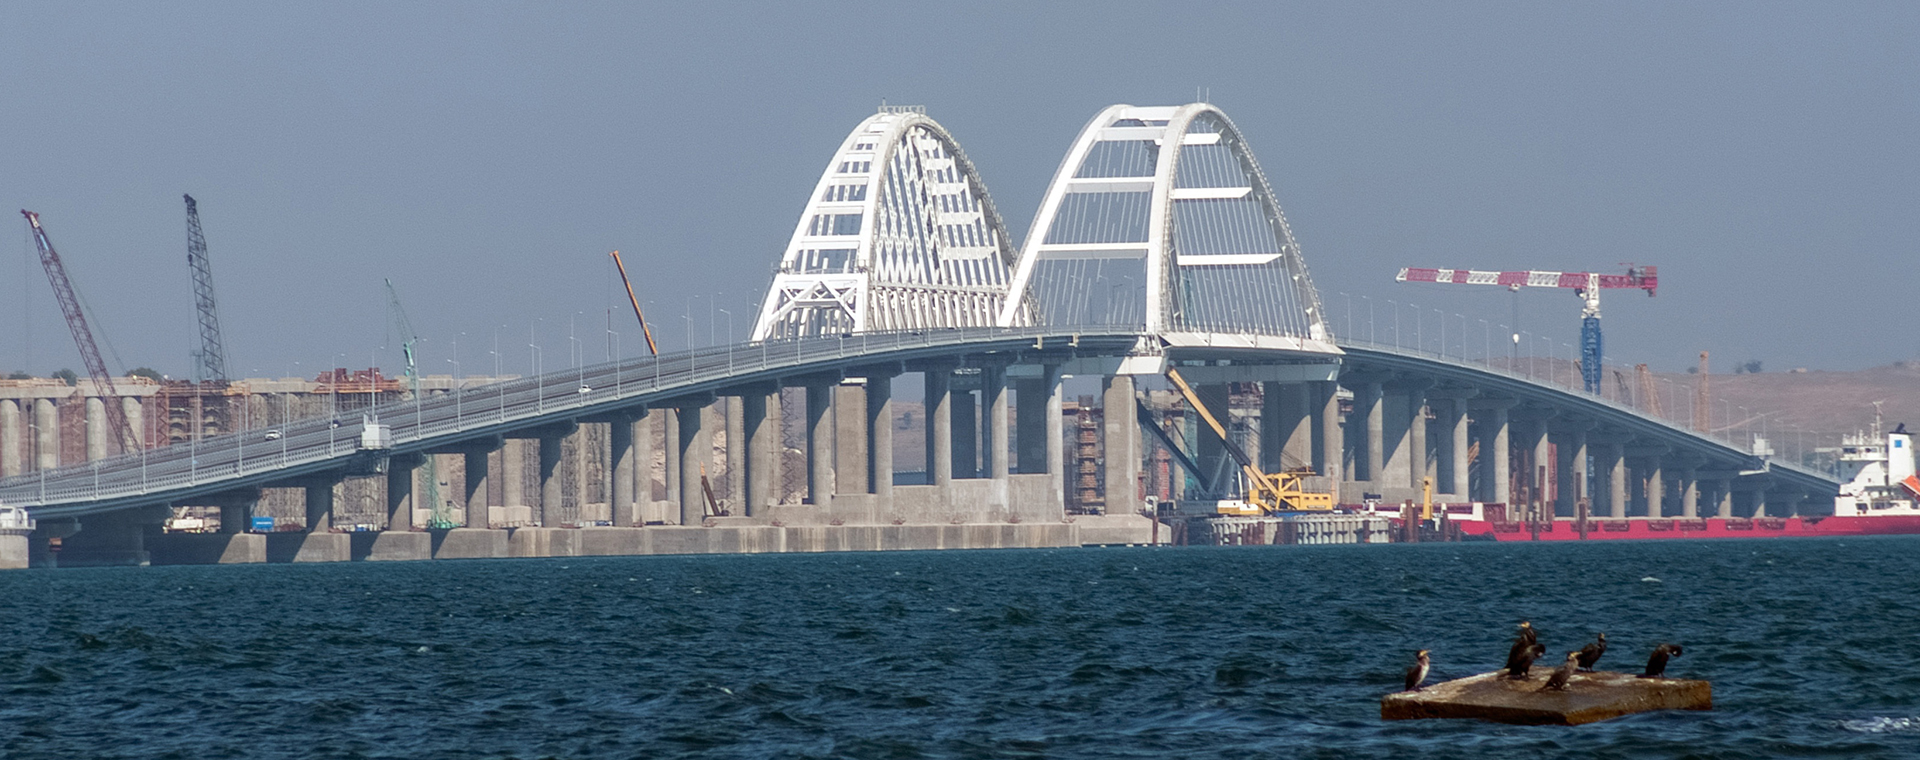 ОдержиМОСТ: рекорды Крымского моста